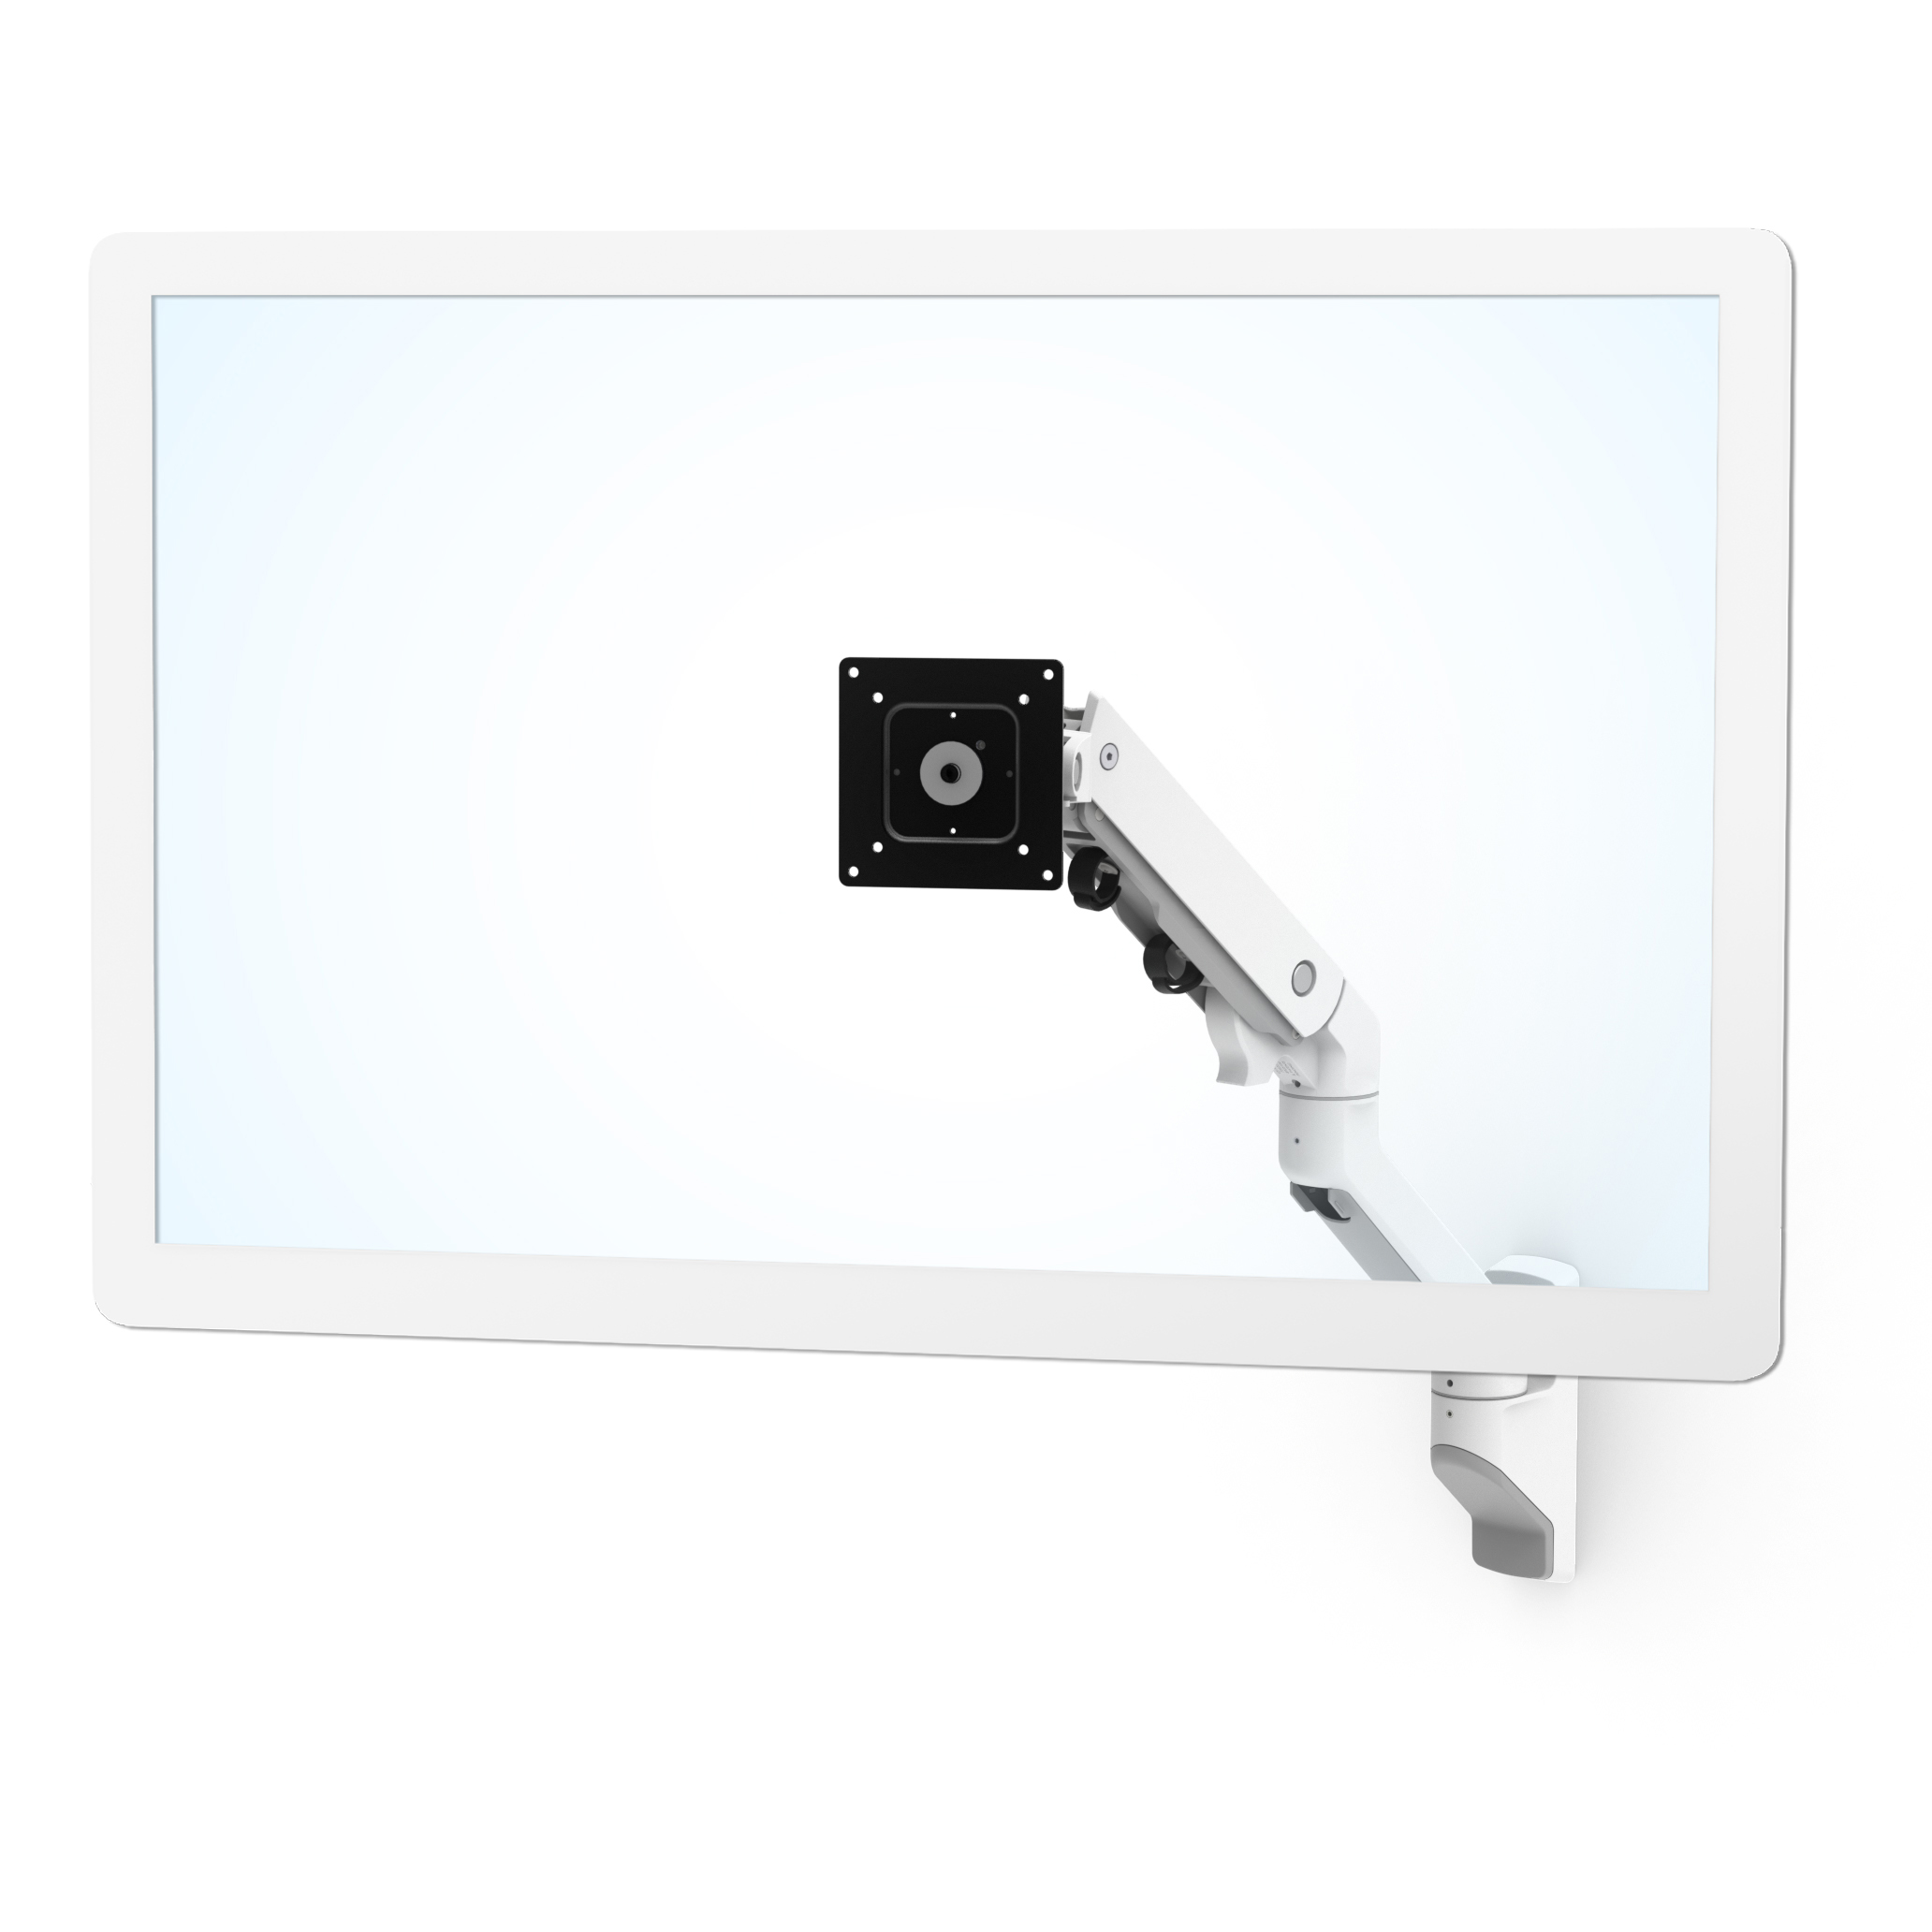 Ergotron Brazo de monitor único MXV, soporte de pared VESA para monitores  de hasta 34 pulgadas, 7 a 20 libras, color blanco